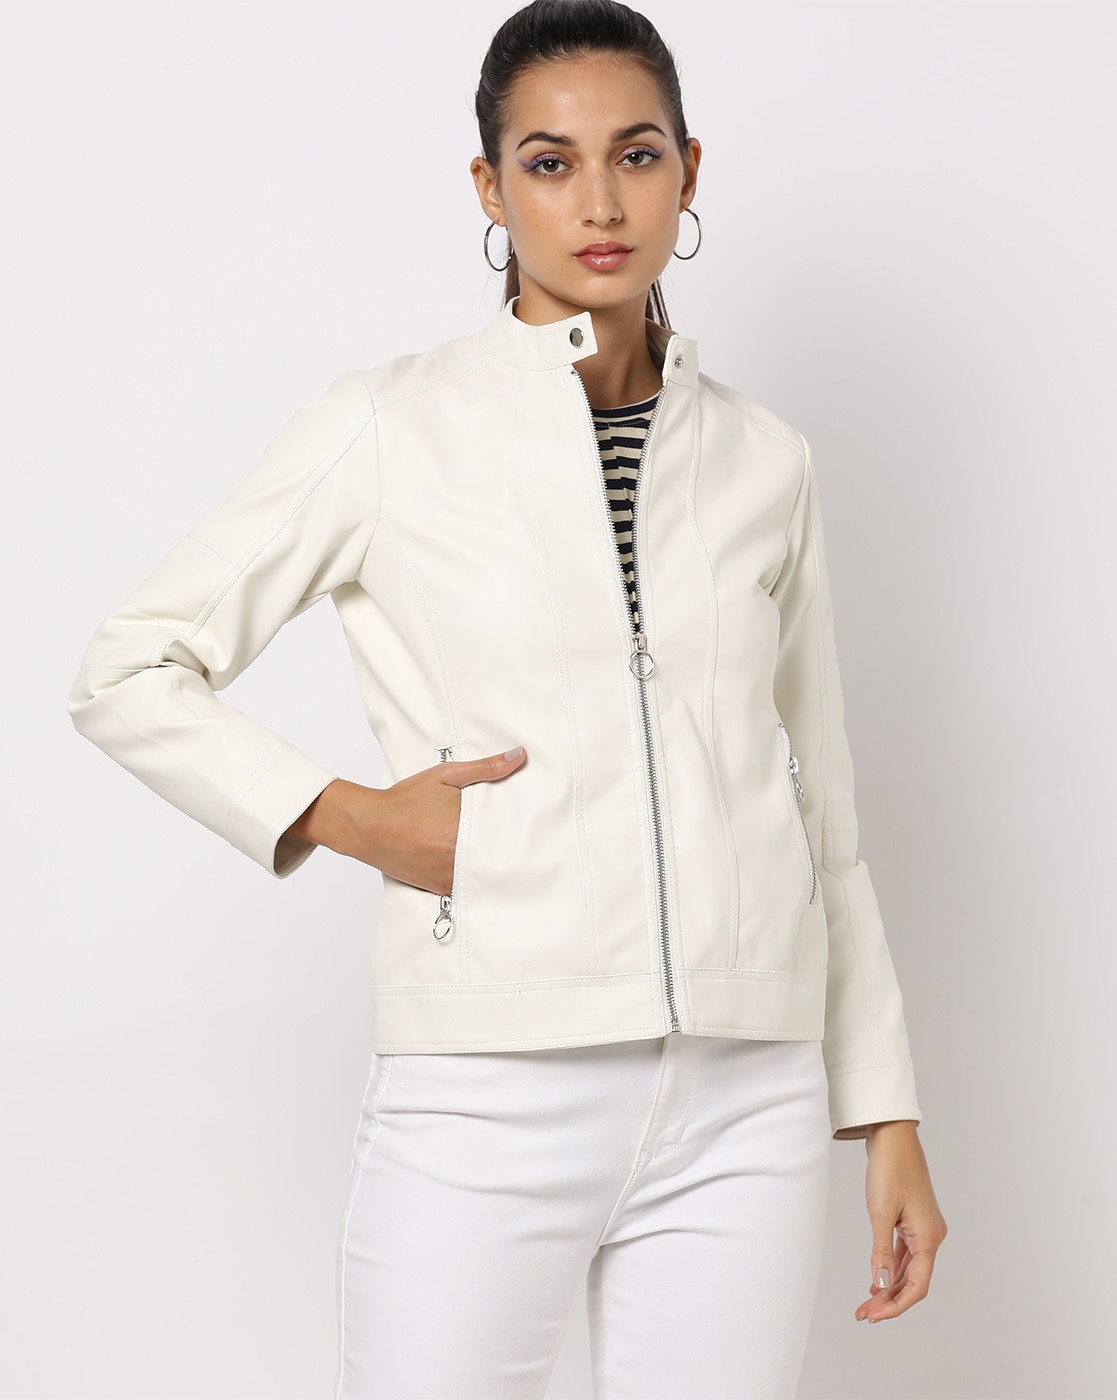 Buy Blue Jackets & Coats for Women by Hubberholme Online | Ajio.com